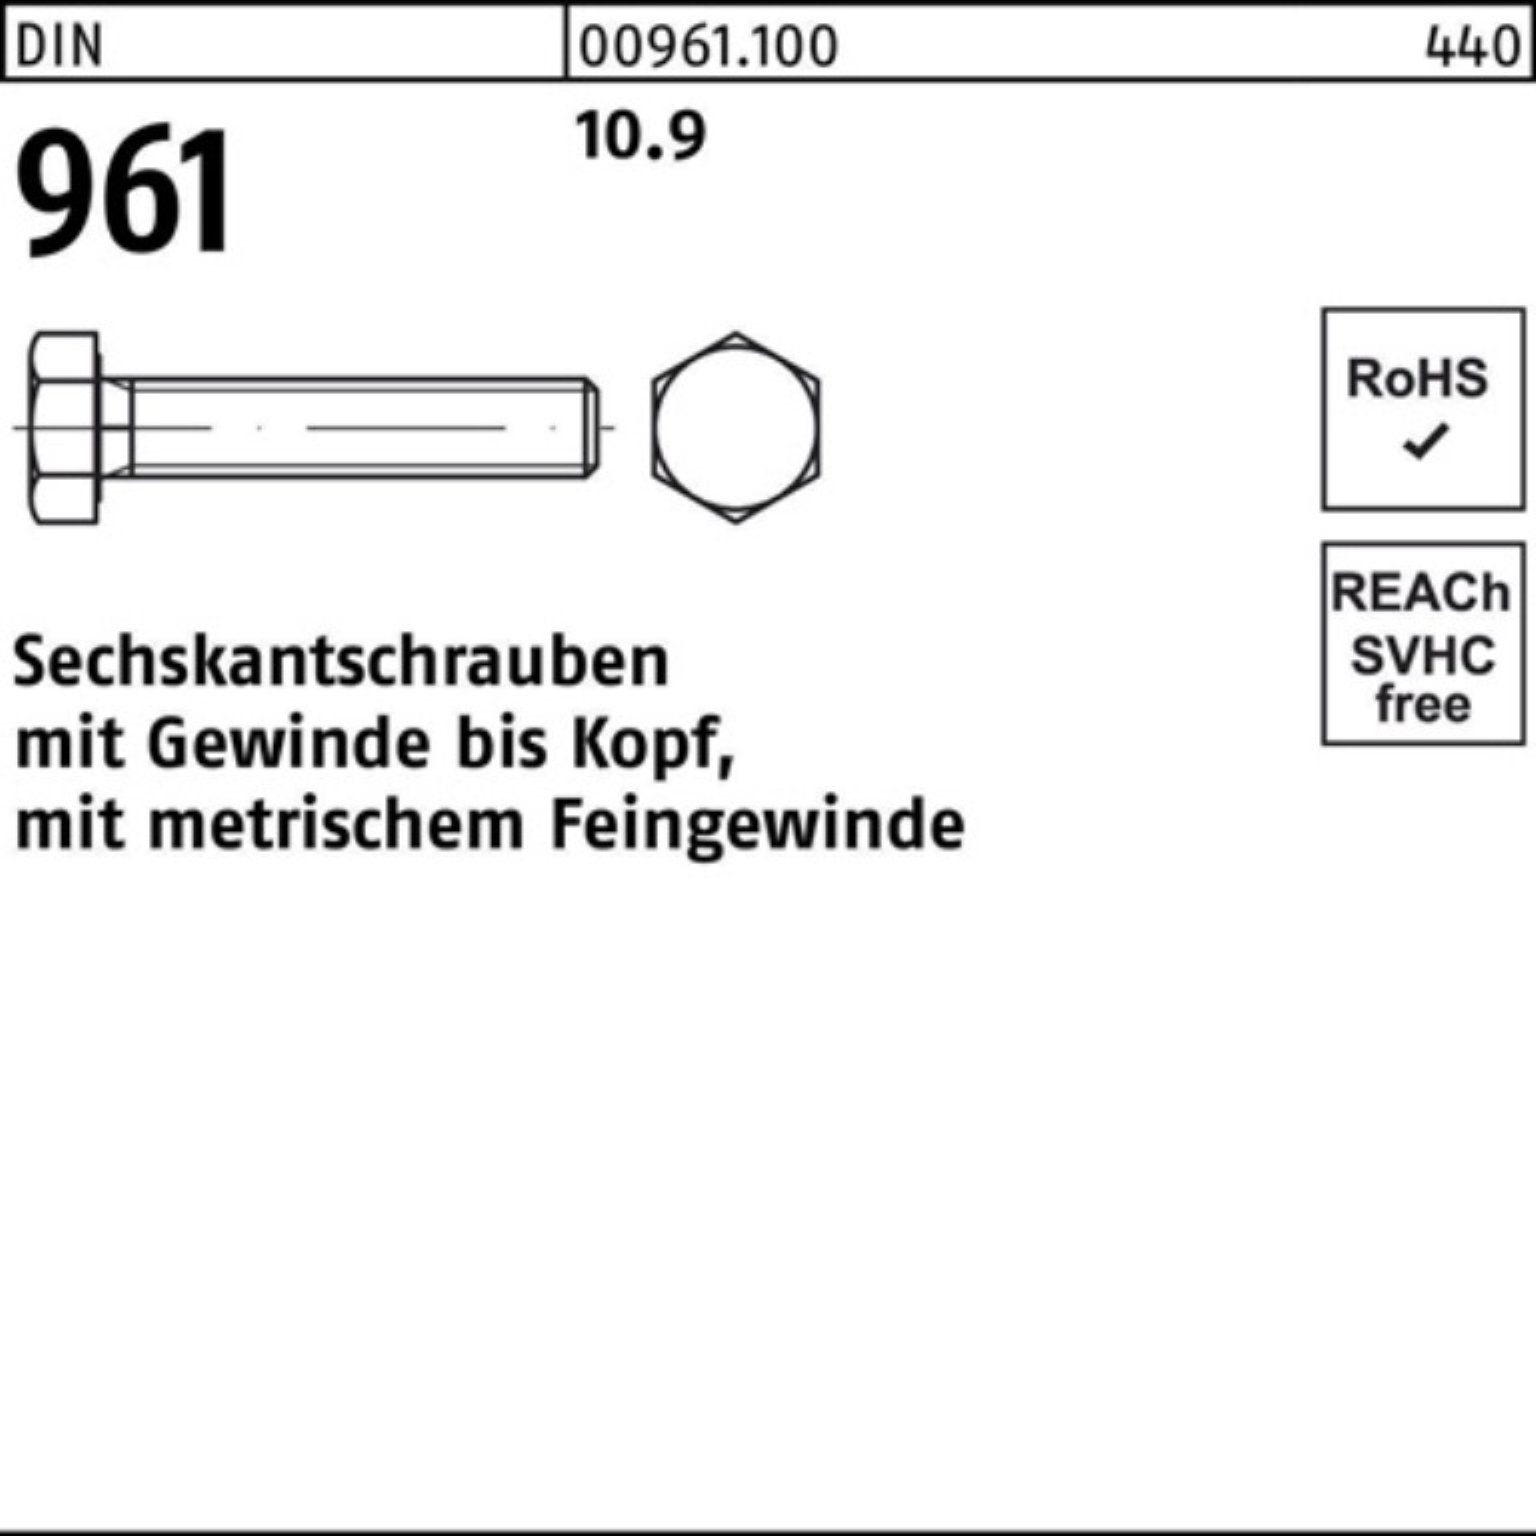 Pack VG 1 96 Sechskantschraube 100er Reyher DIN DIN 961 10.9 Sechskantschraube 70 Stück M30x2x